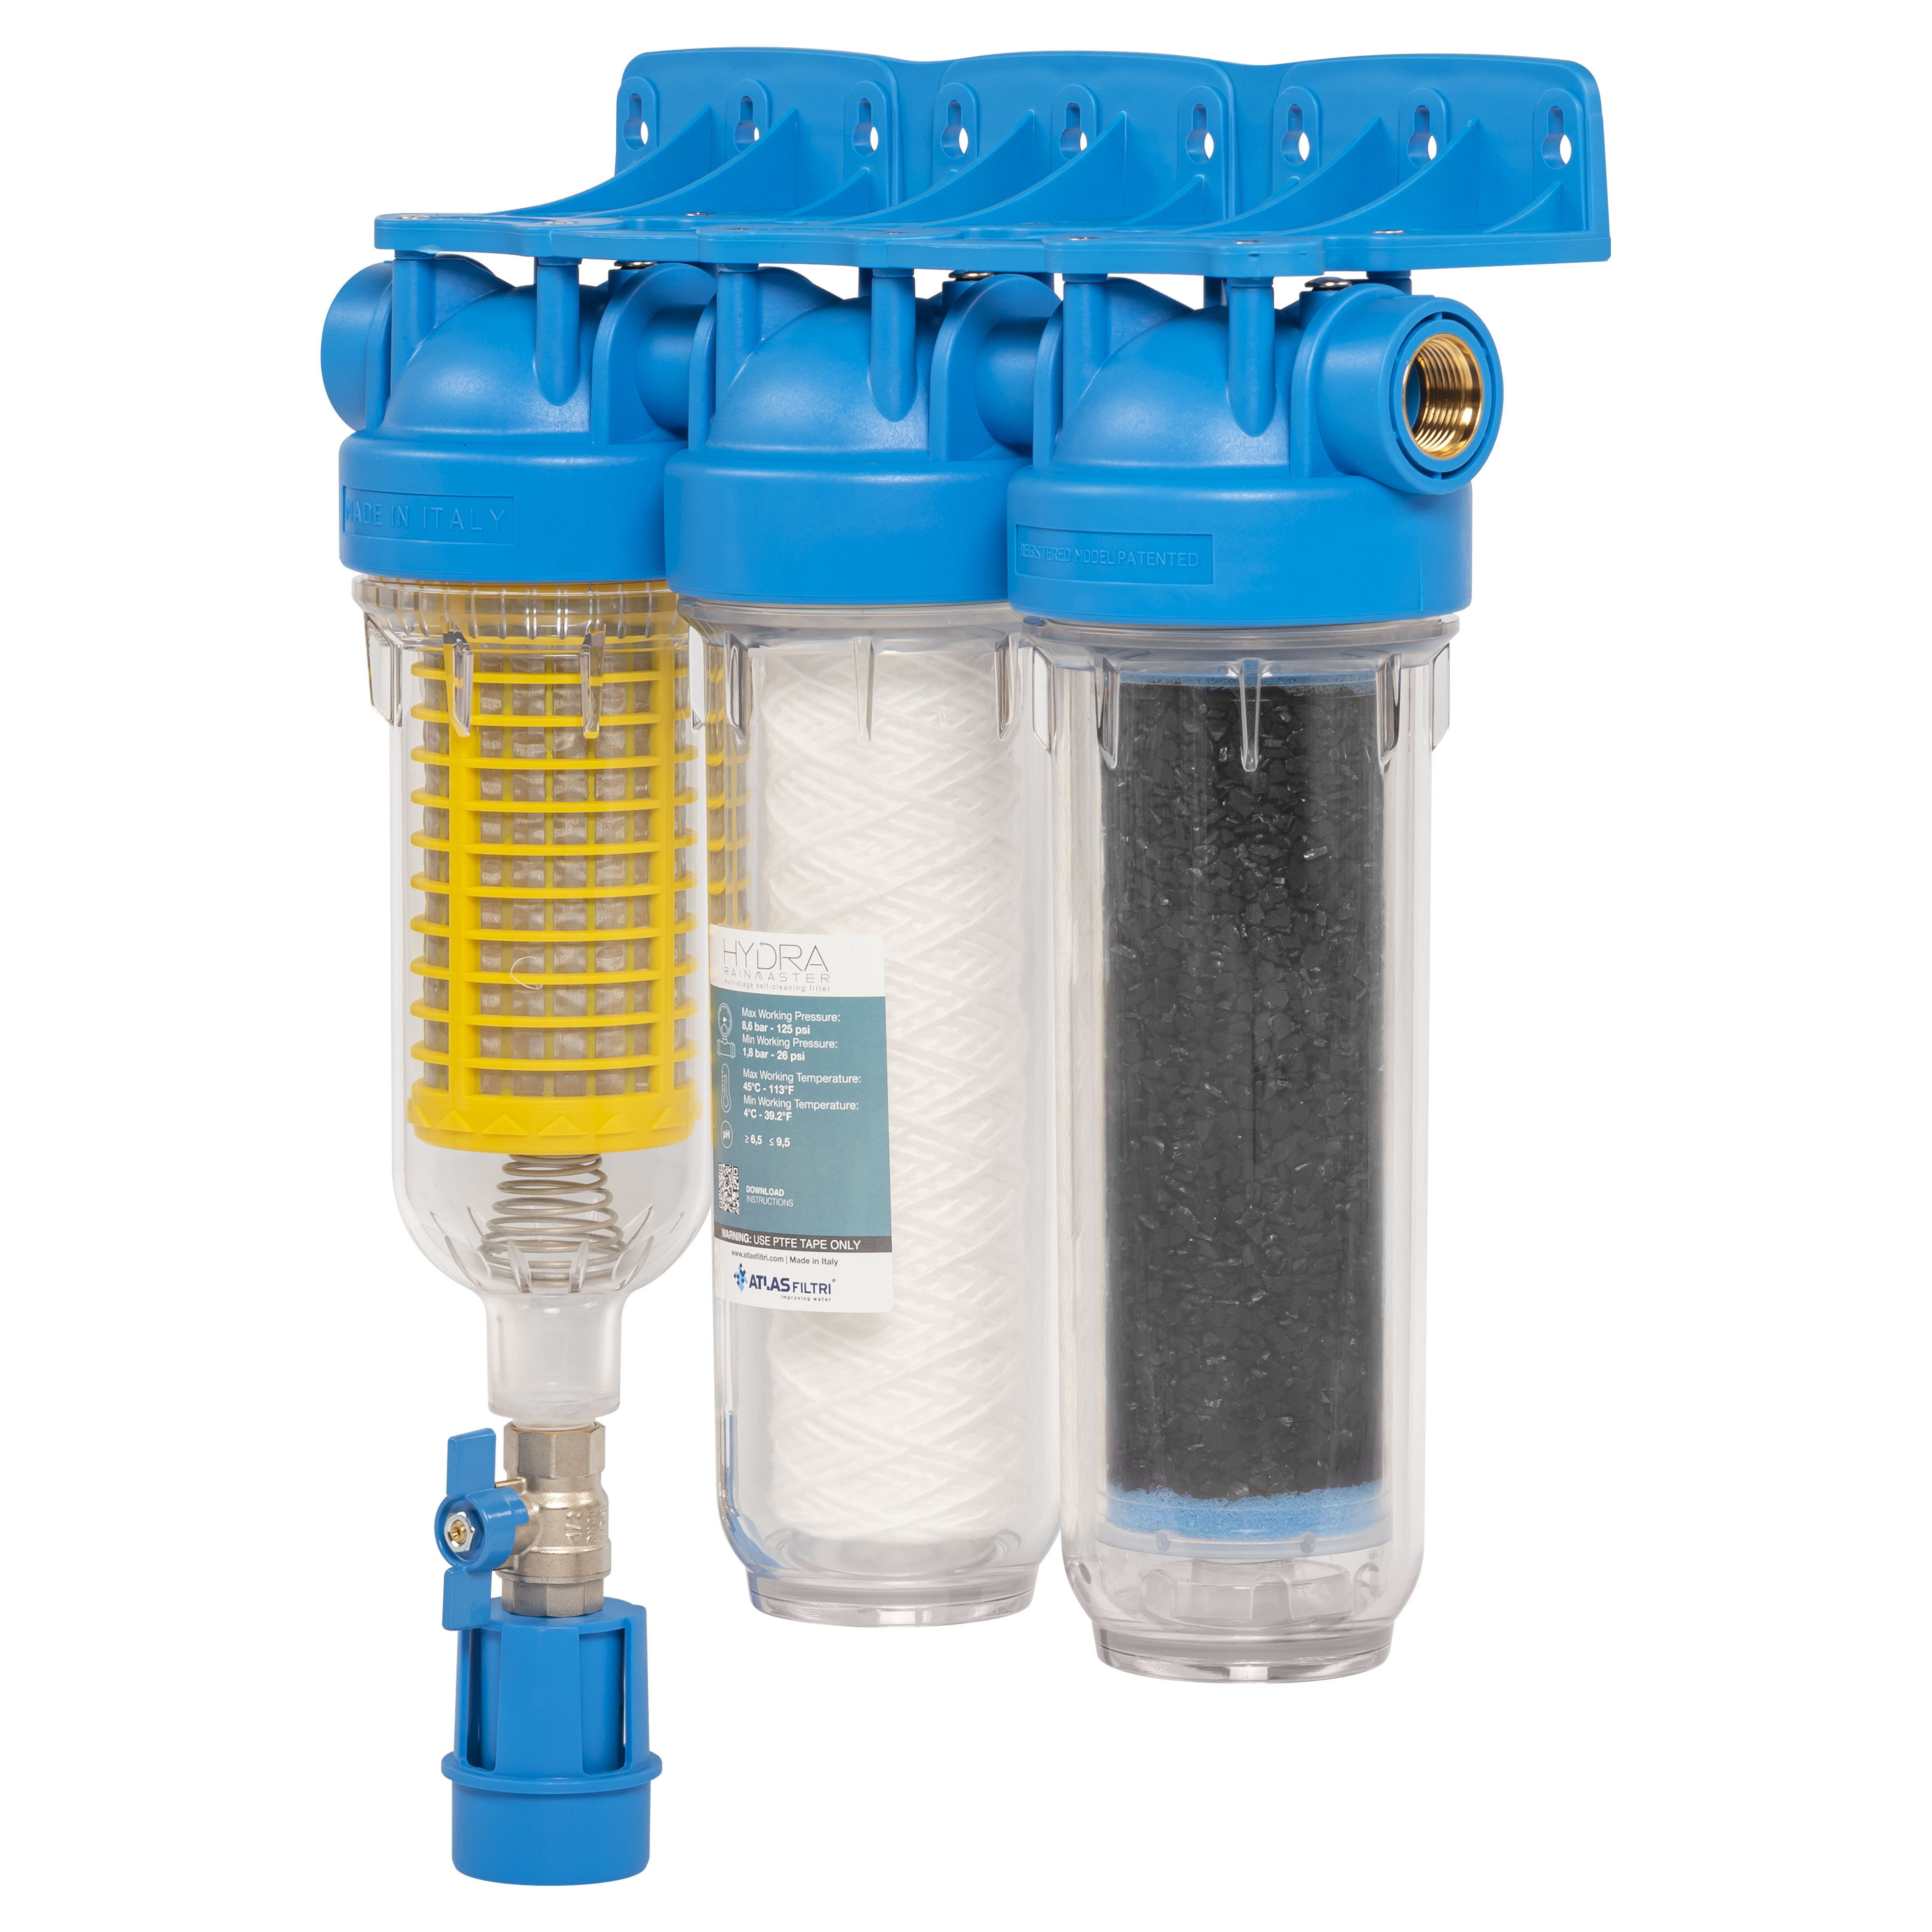 Купить фильтр для воды с ручной промывкой Atlas Filtri Hydra Rainmaster Trio LA 3/4 KIT (RA6095224) в Киеве